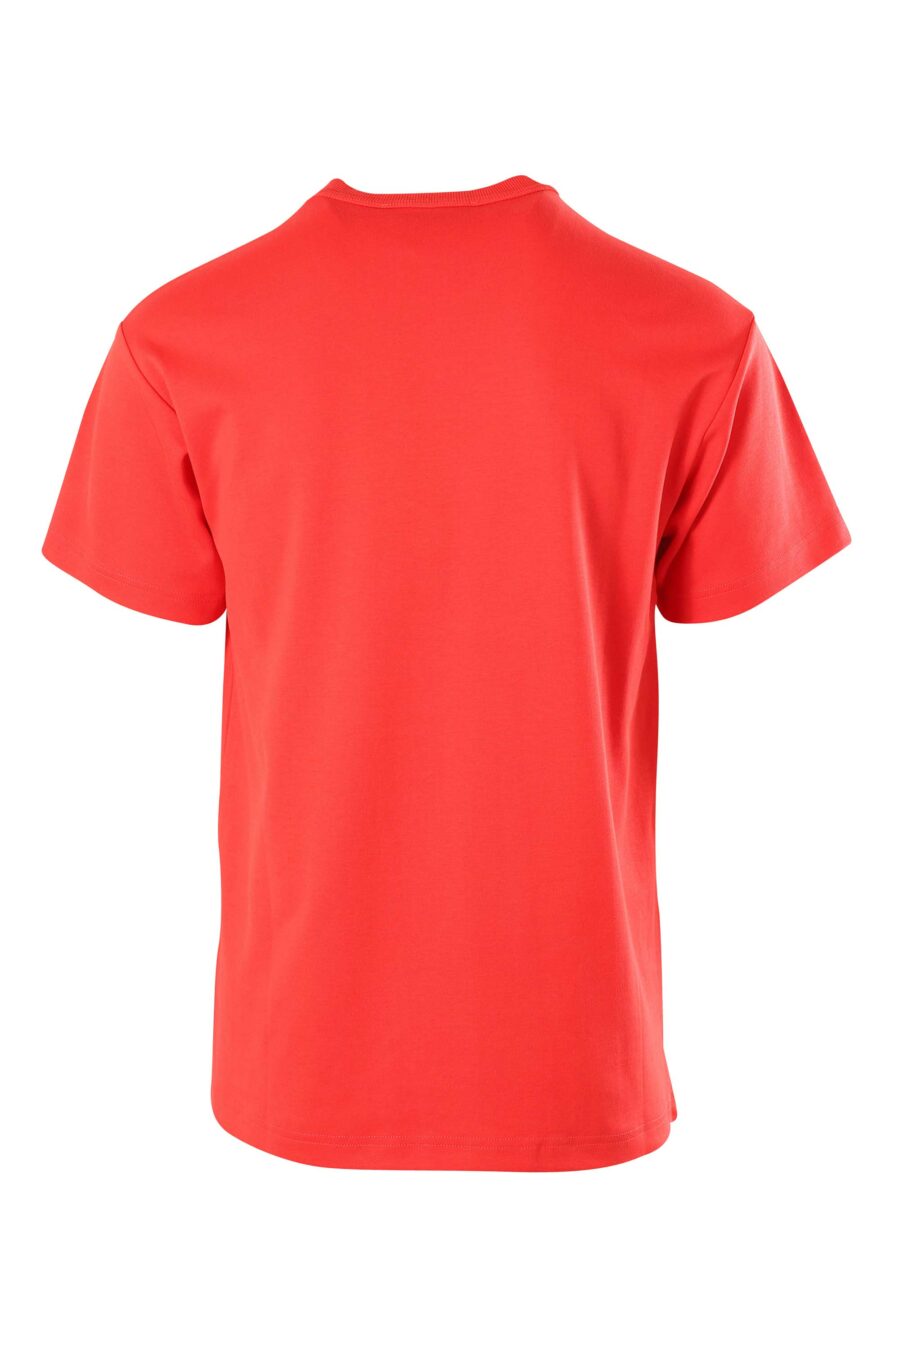 T-shirt vermelha com logótipo duplo entrelaçado - 8052019234886 2